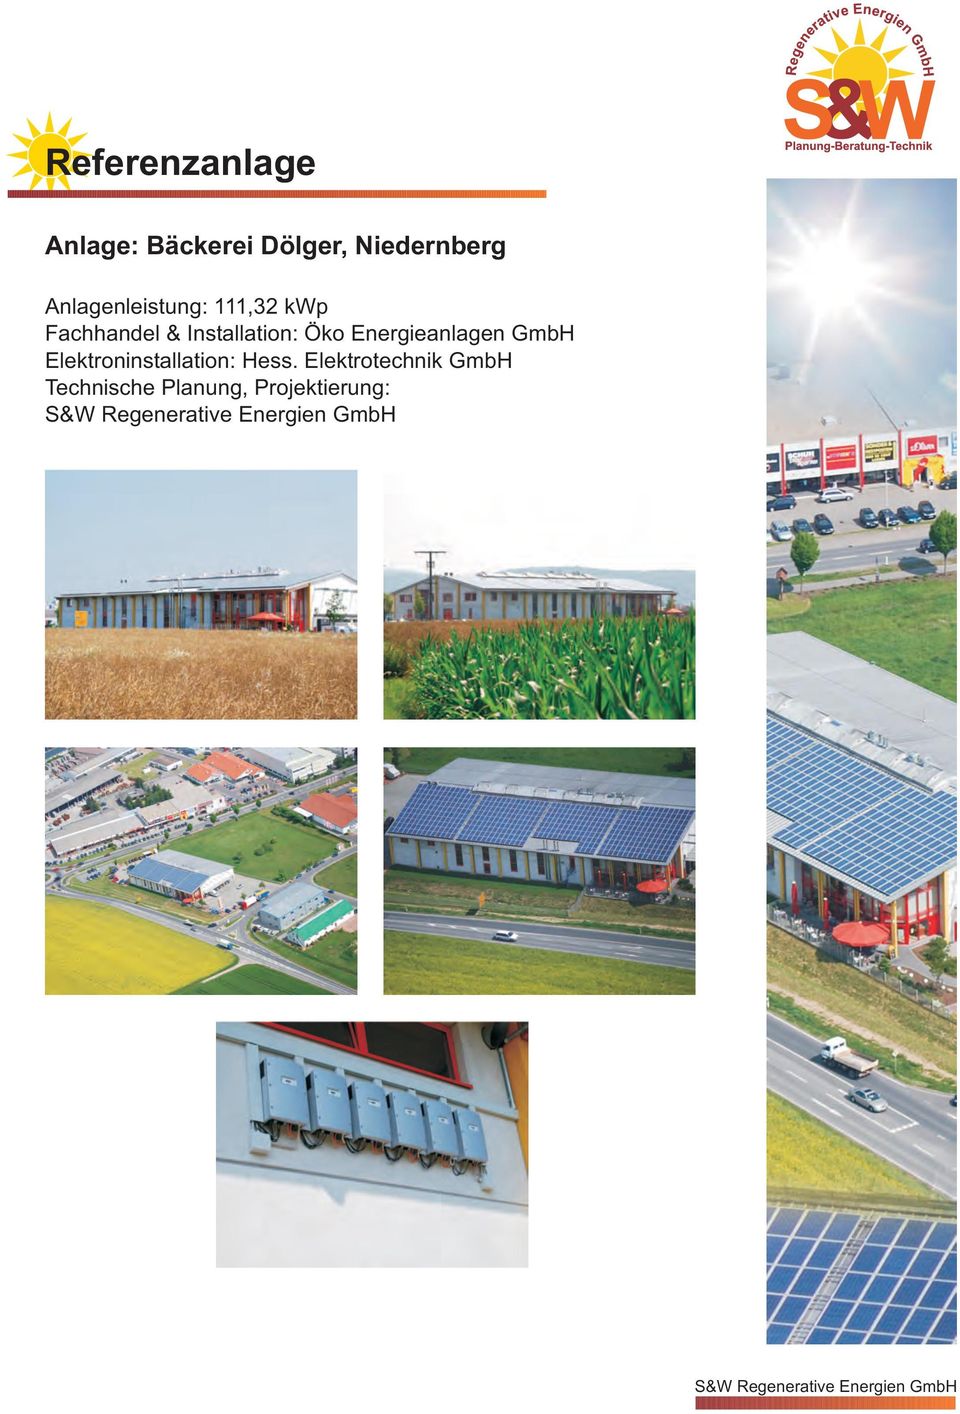 Installation: Öko Energieanlagen GmbH